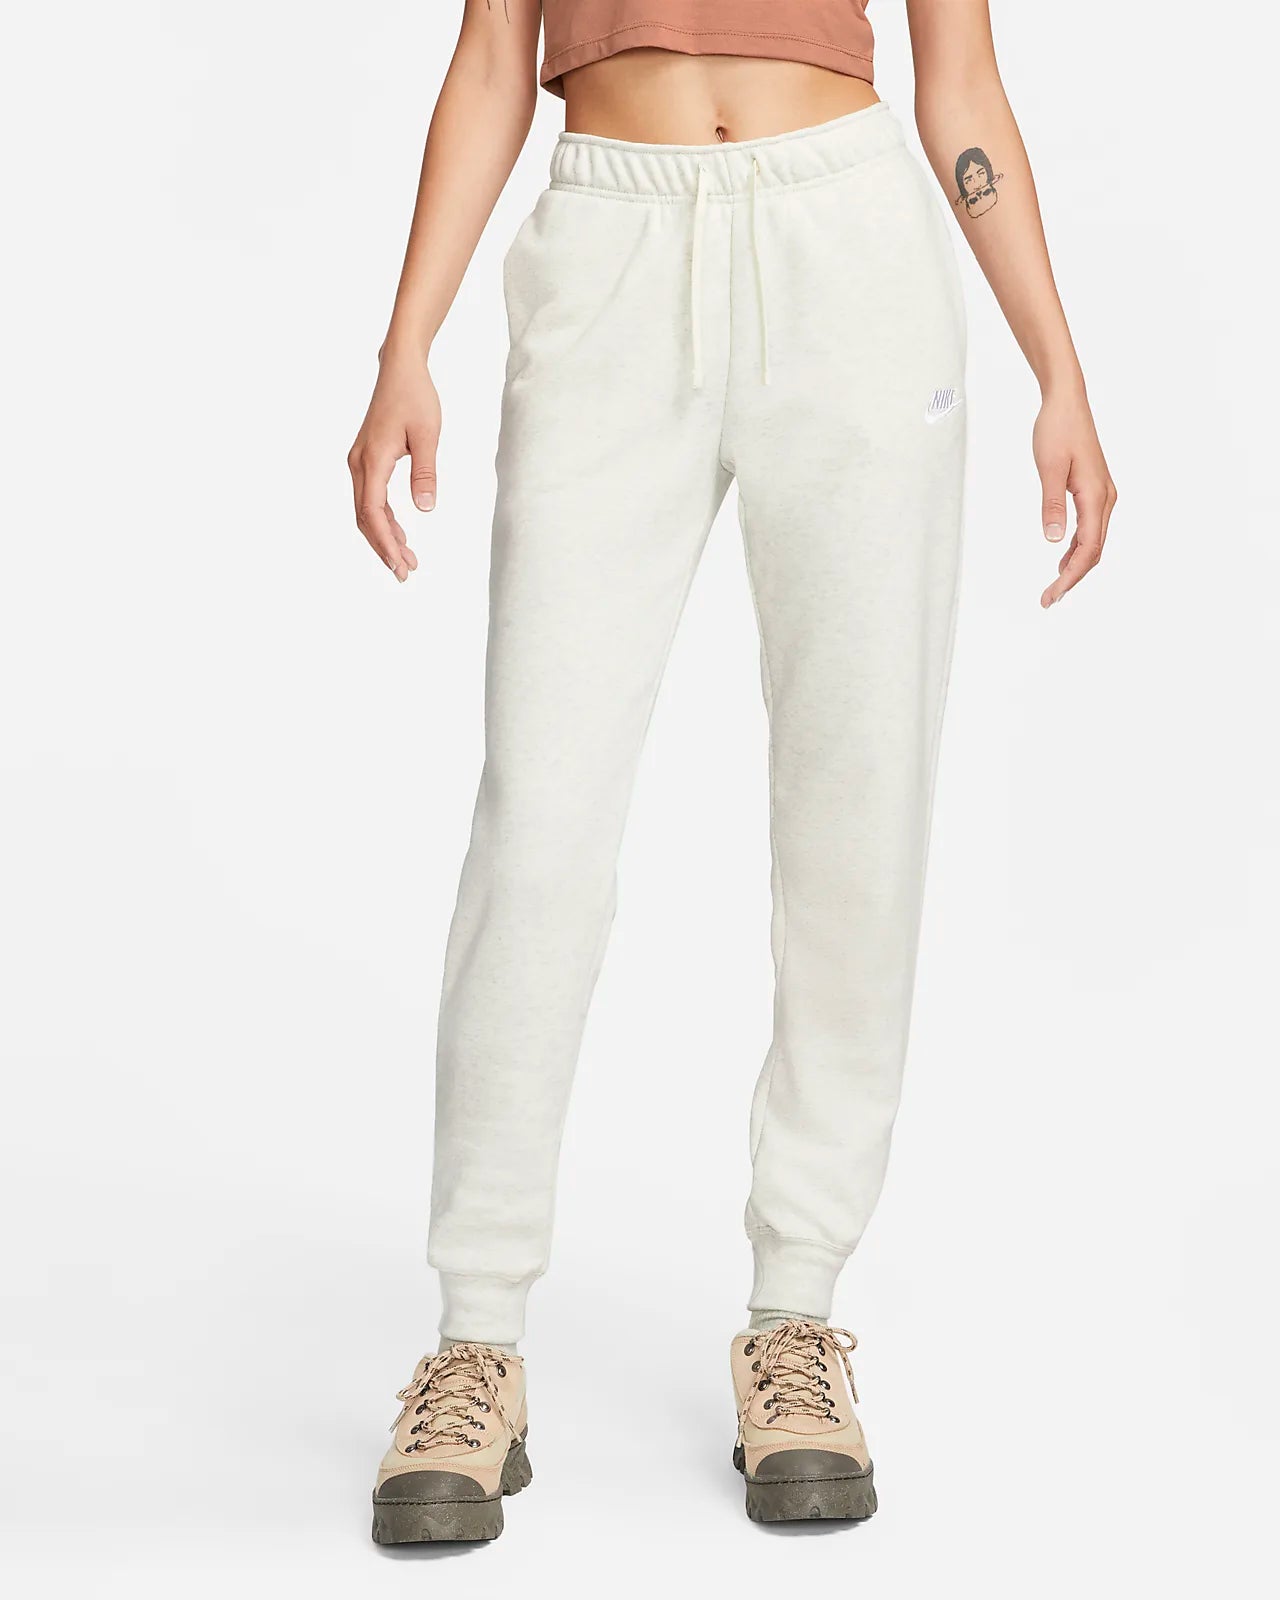 Nike Sportswear Club Fleece Women’s Sweatpants - "White”